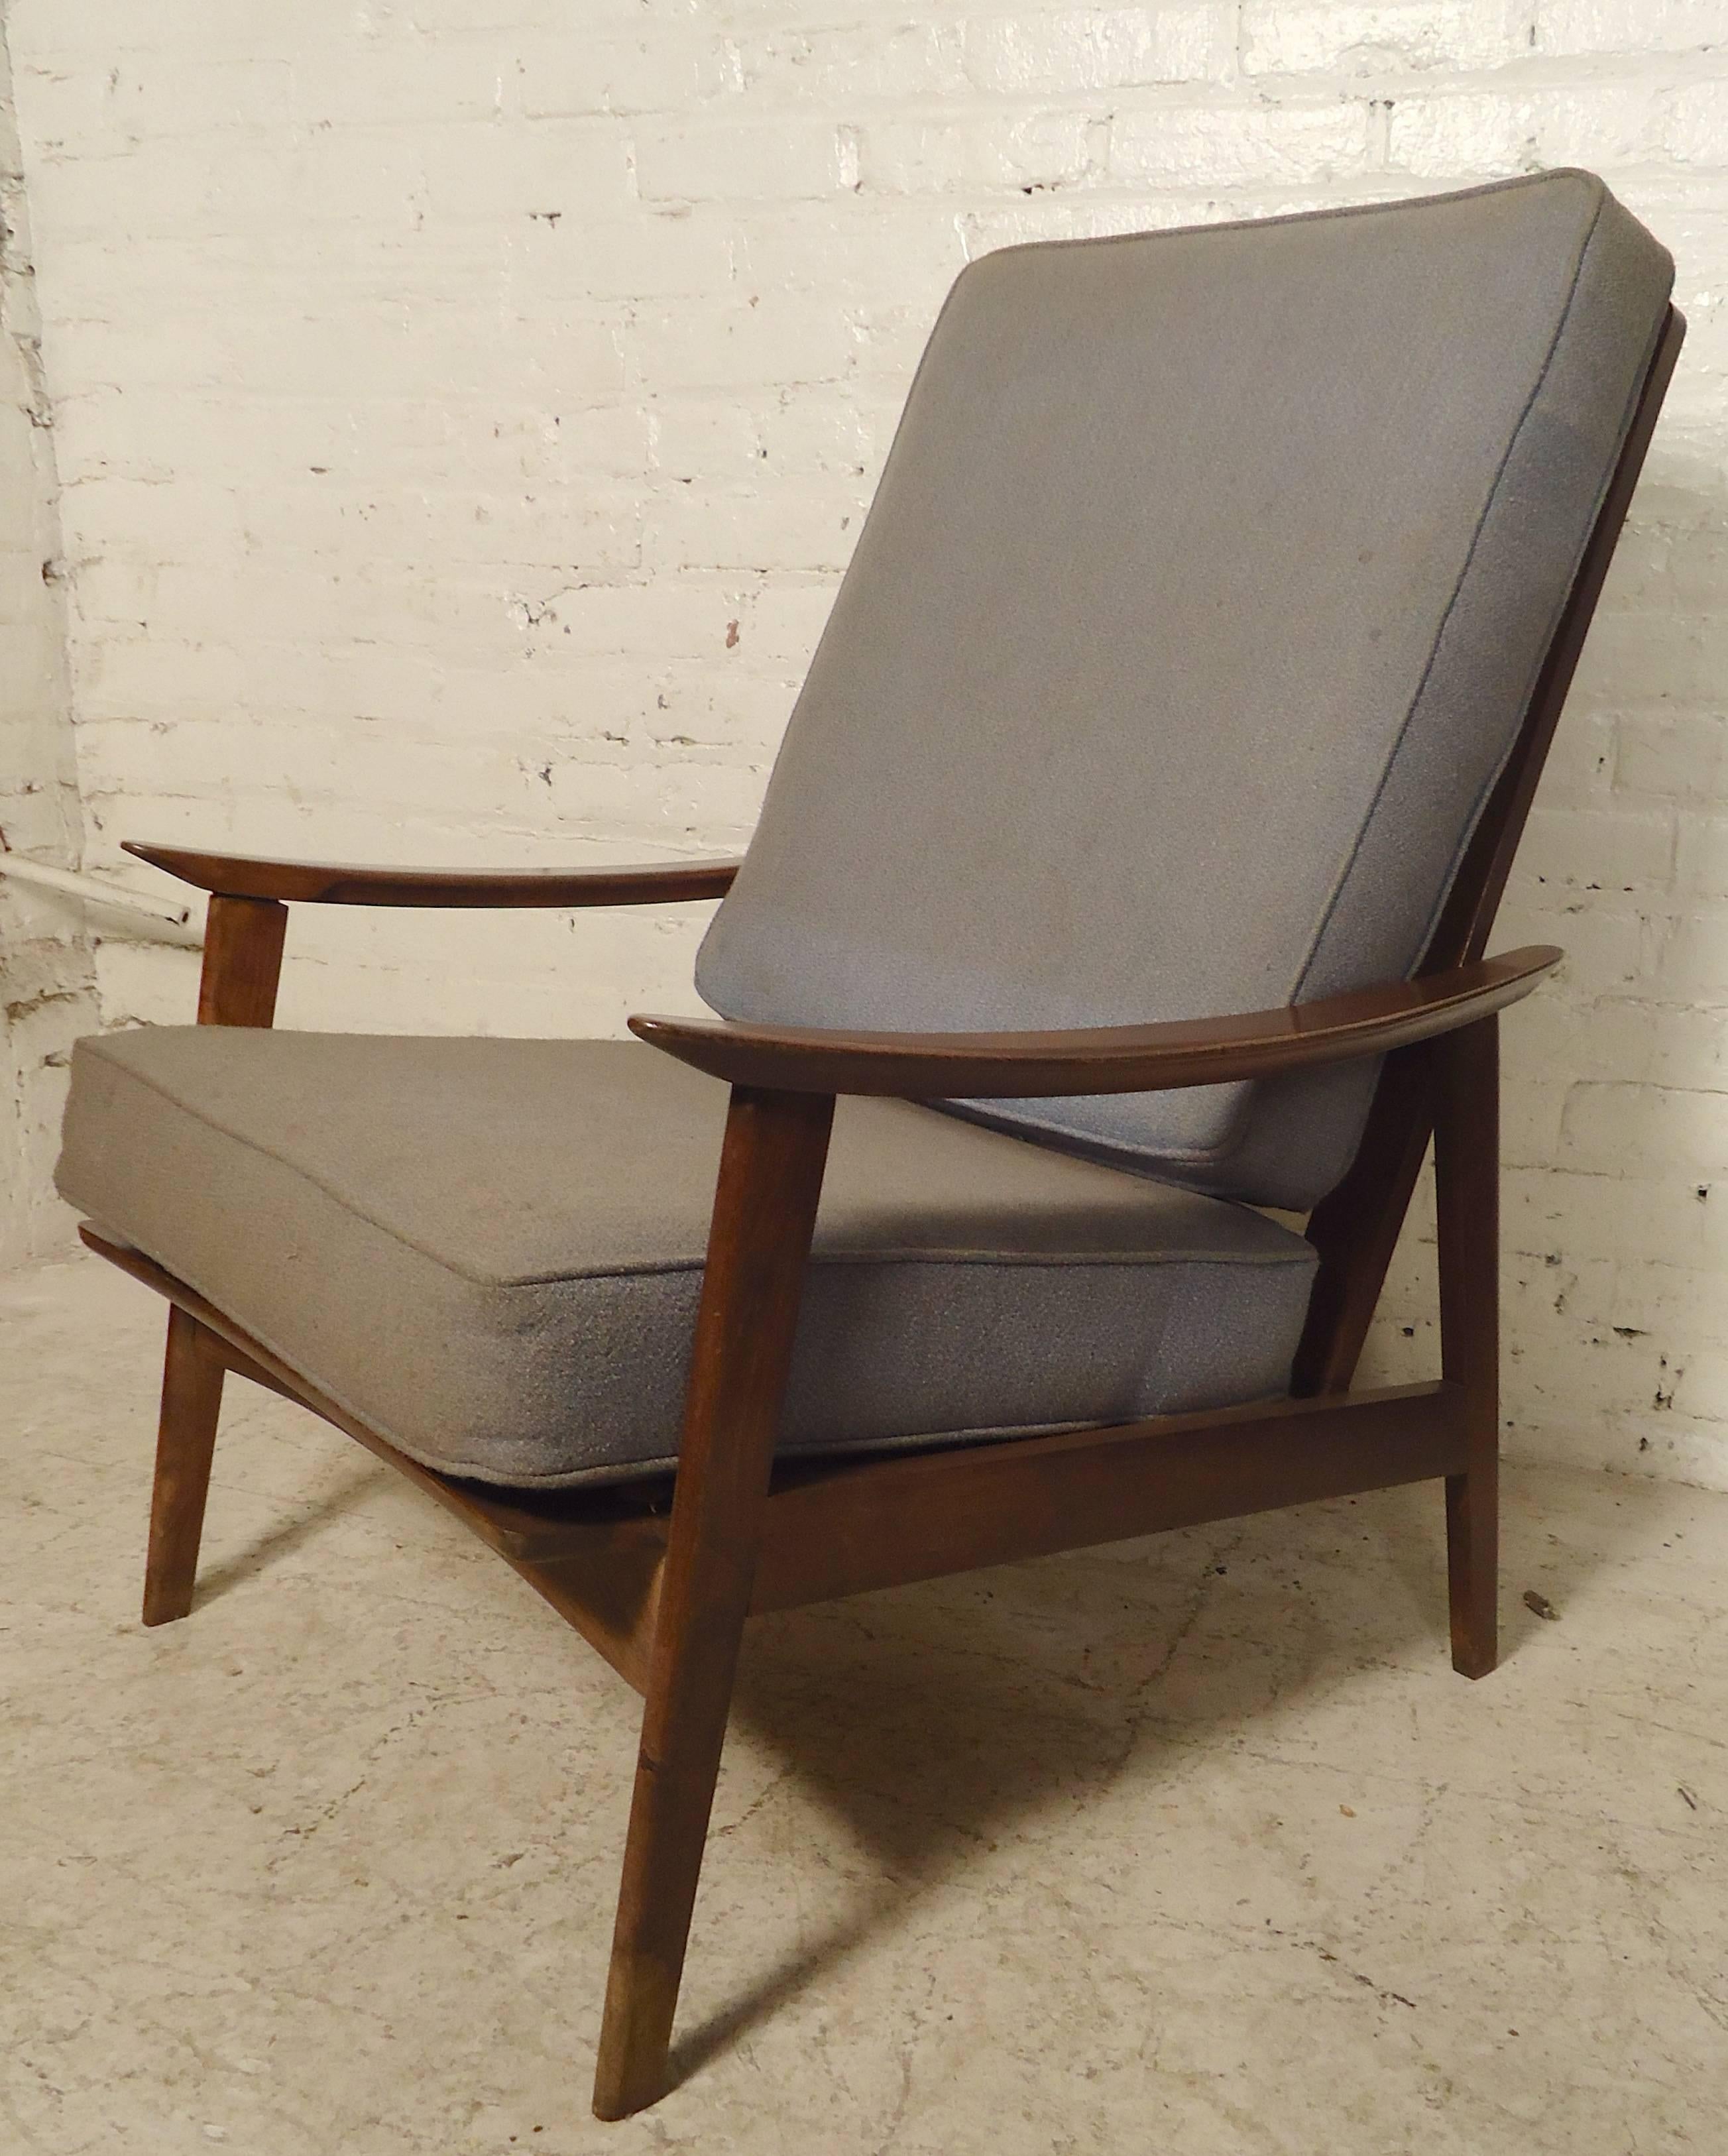 Hübsche moderne Holzstühle im Vintage-Stil mit geschwungenen Armlehnen, Spindellehnen und dicken Kissen. 

(Bitte bestätigen Sie den Standort des Artikels - NY oder NJ - mit dem Händler).
 